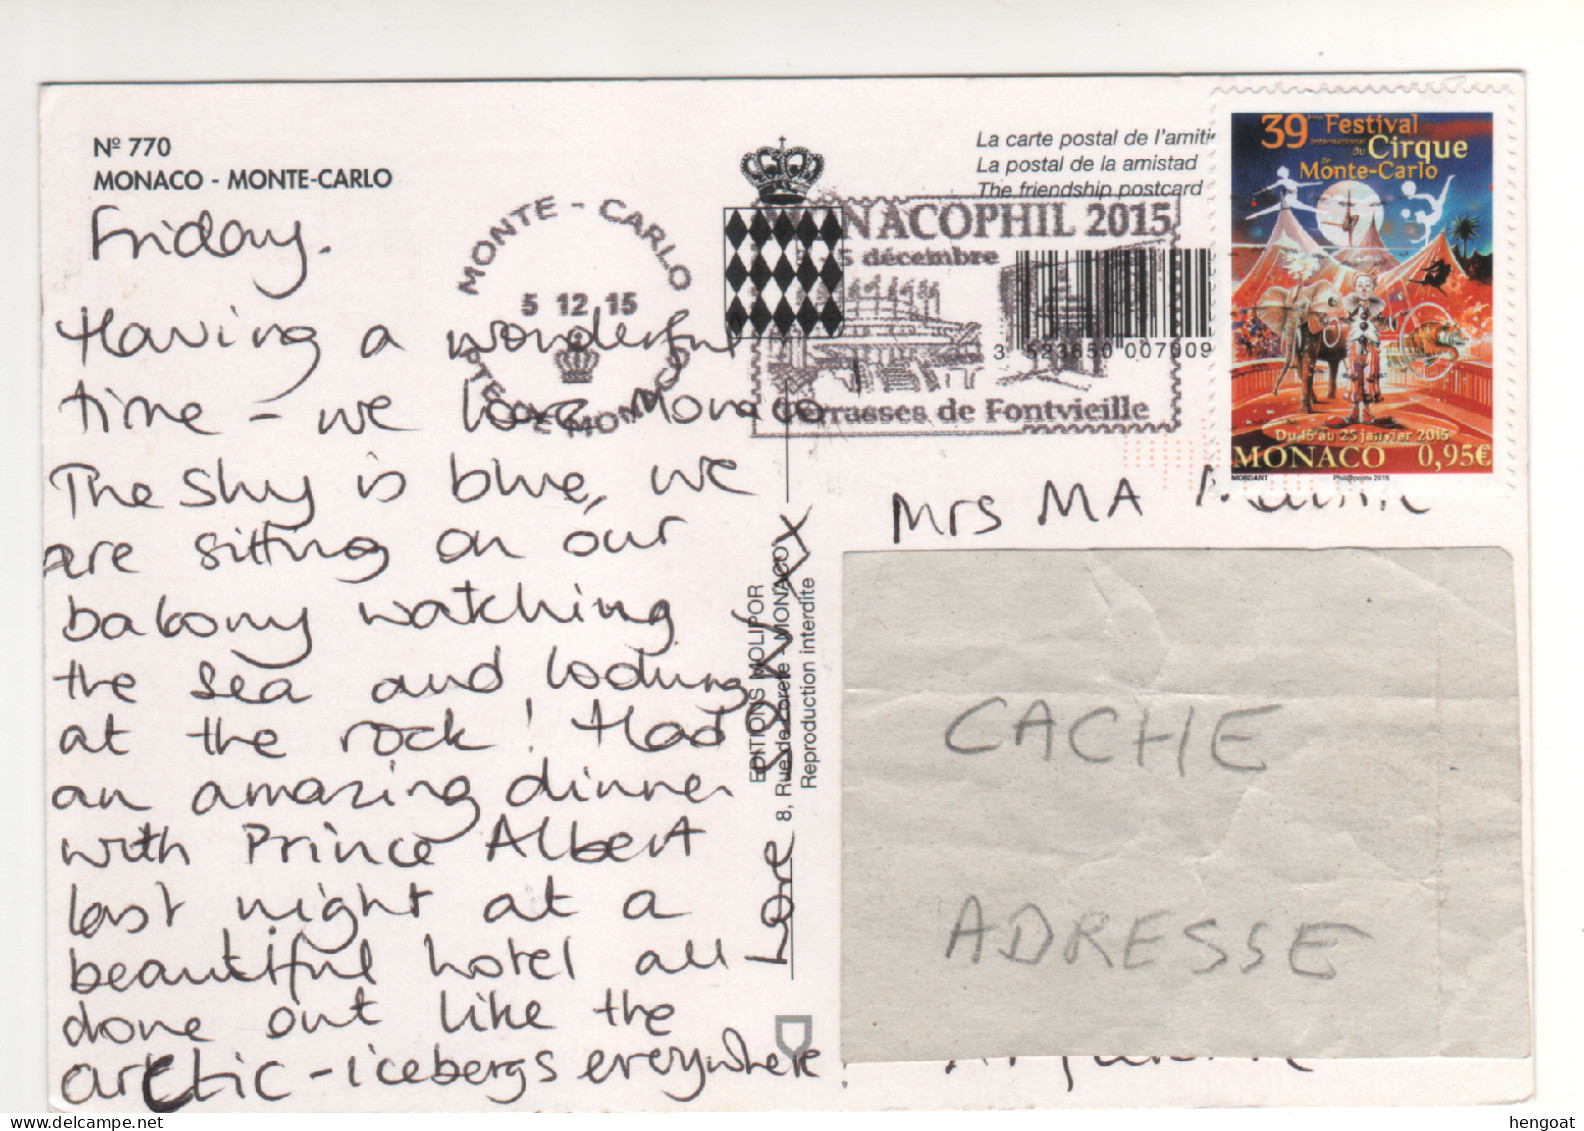 Timbre , Stamp " 39 E Festival Du Cirque Monte Carlo " Sur CP , Carte , Postcard Du 05/12/2015 - Covers & Documents